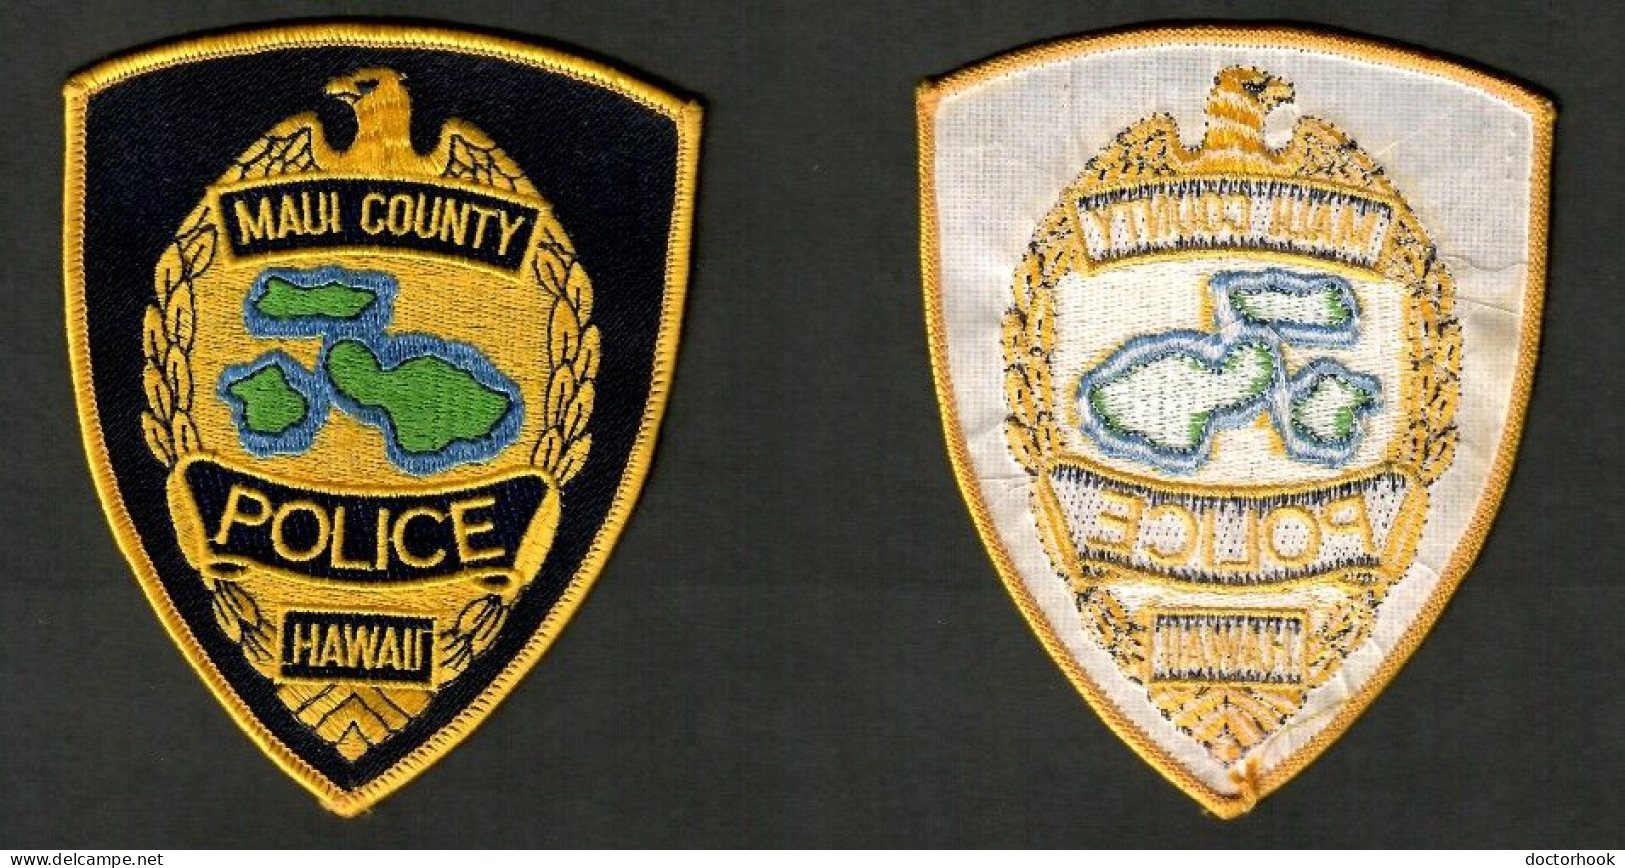 U.S.A.--- "HAWAII---MAUI COUNTY POLICE" PATCH (AP-6) - Policia